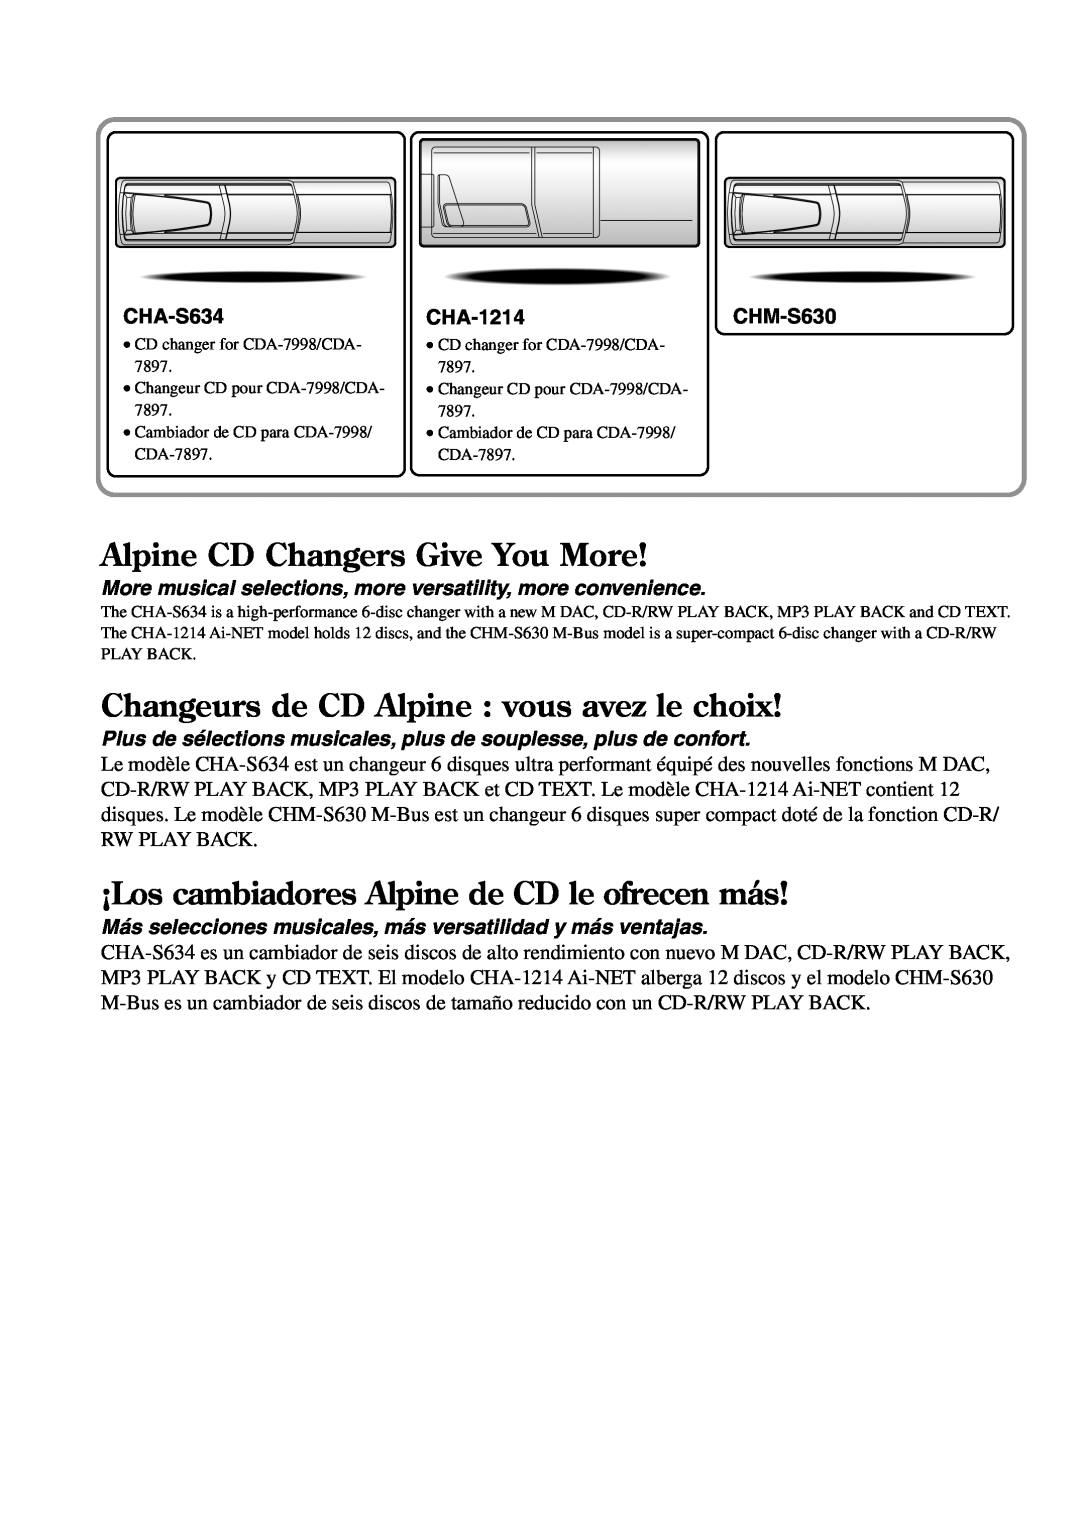 Alpine CDA-7897 Alpine CD Changers Give You More, Changeurs de CD Alpine vous avez le choix, CHA-S634, CHA-1214CHM-S630 